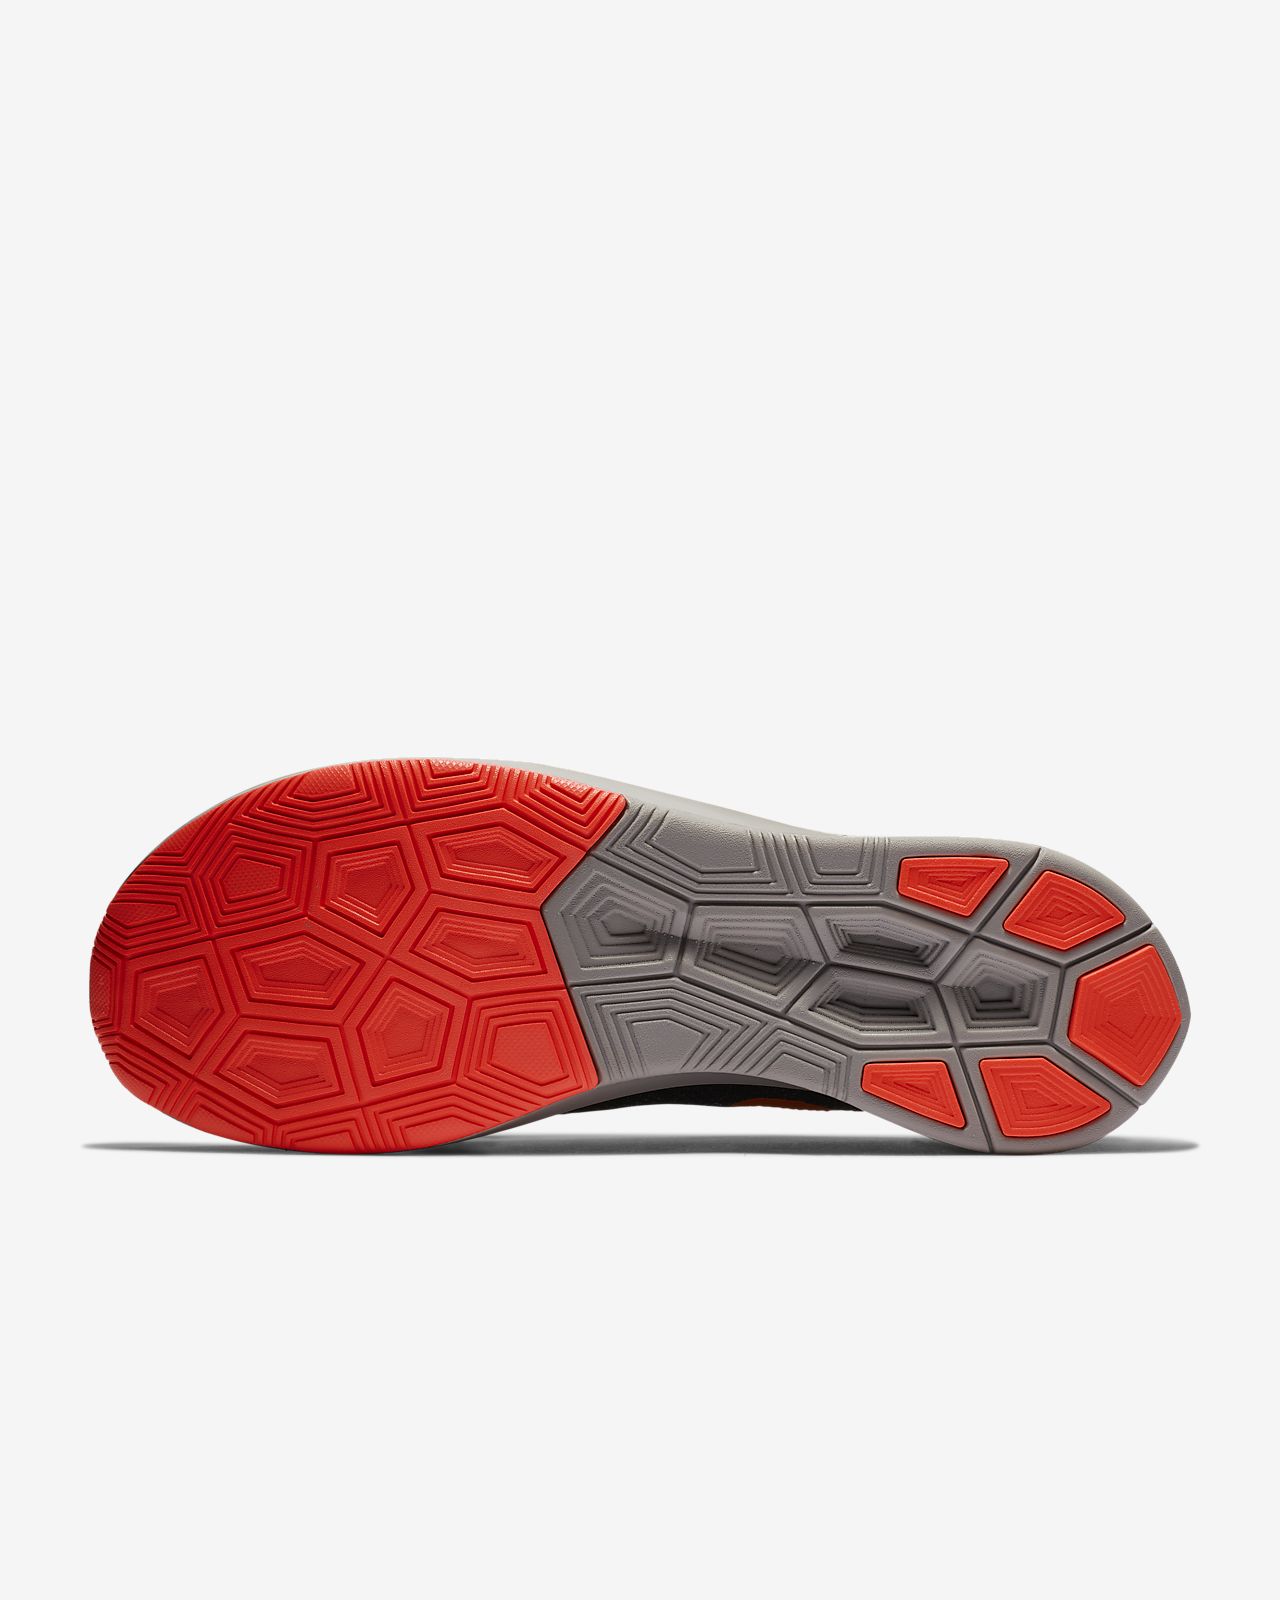 Nike Zoom Fly Flyknit Men's Running Shoe